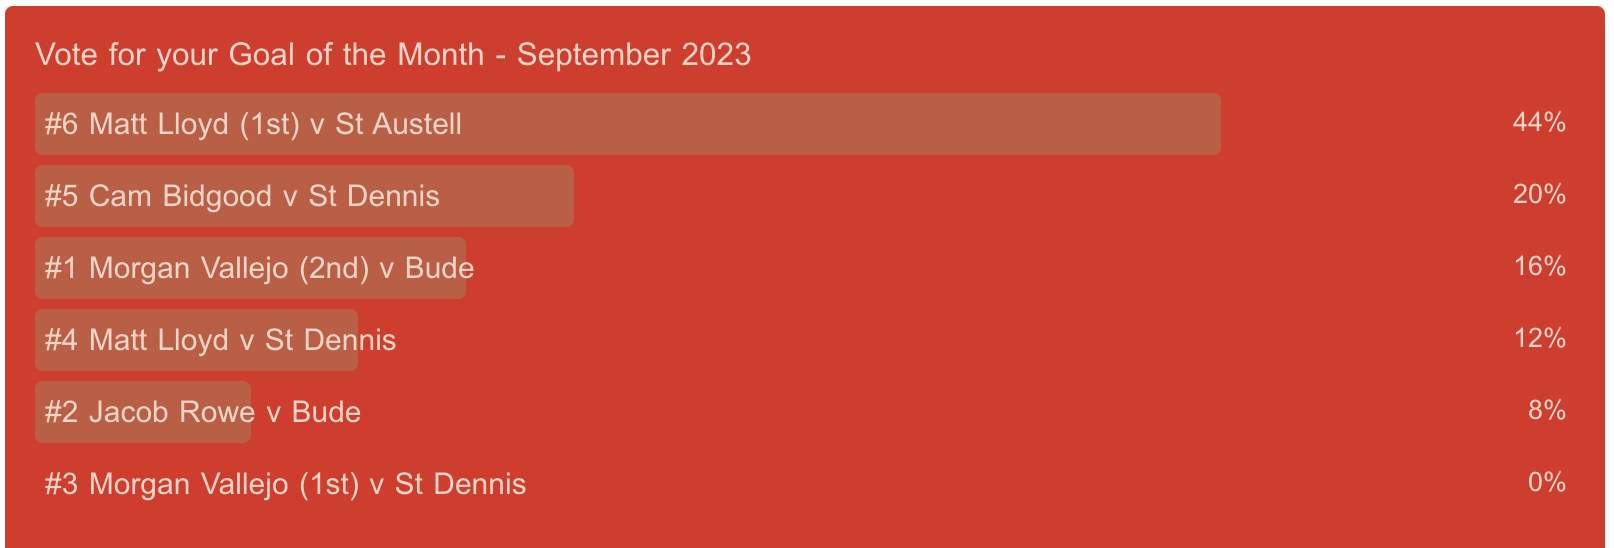 Goal of the Month Winner   - September 2023